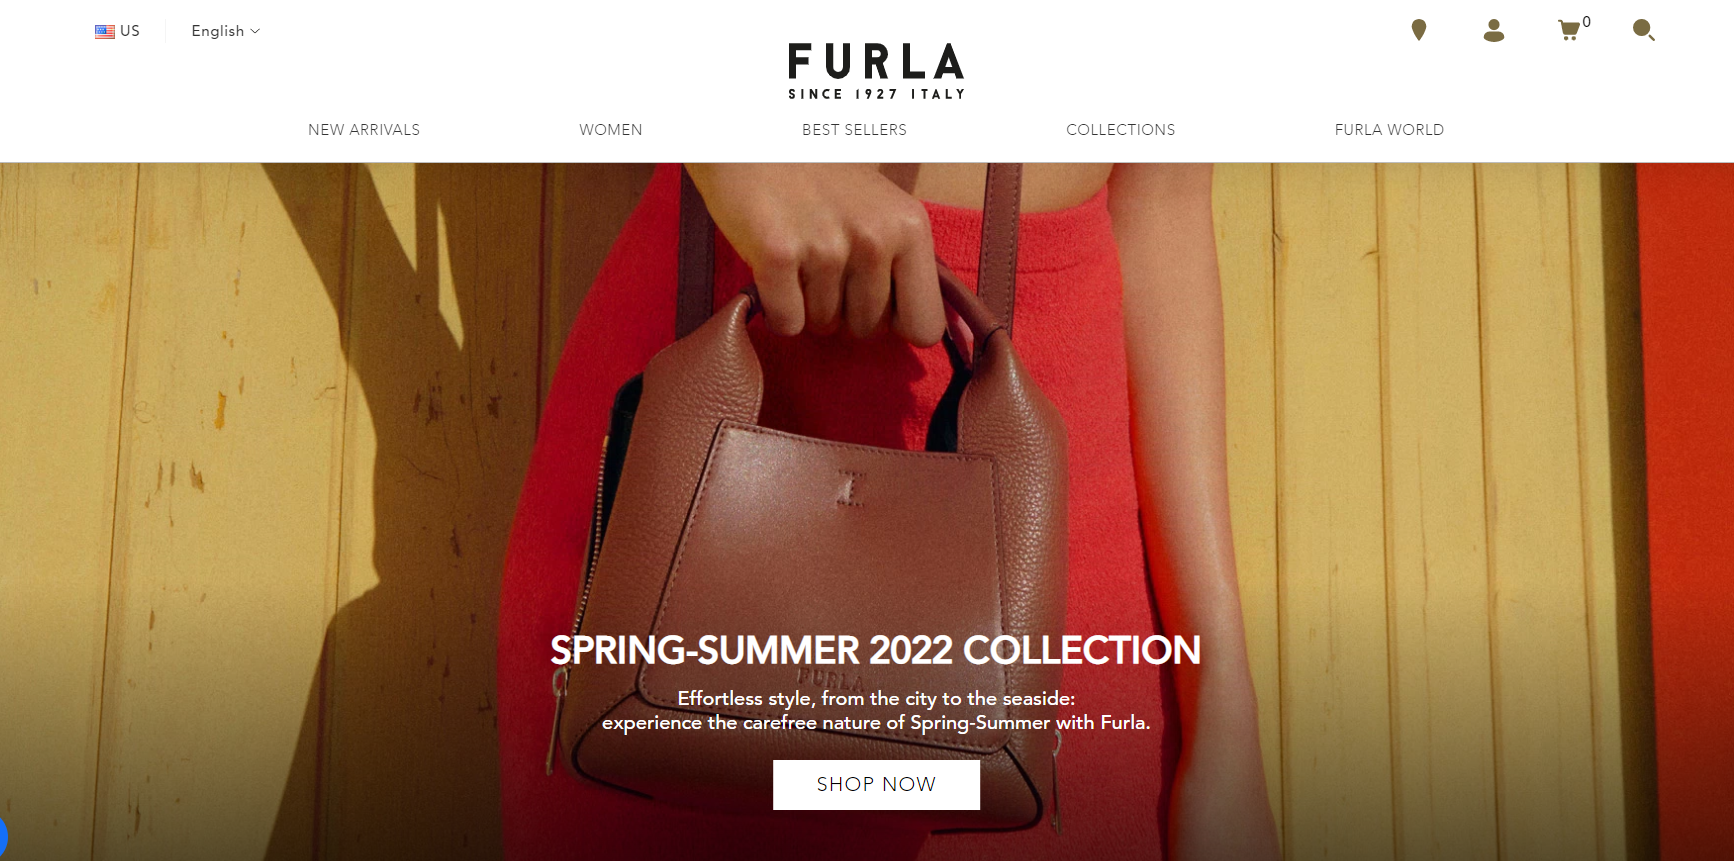 传：意大利皮具品牌 Furla 的所有者有意出售公司股权